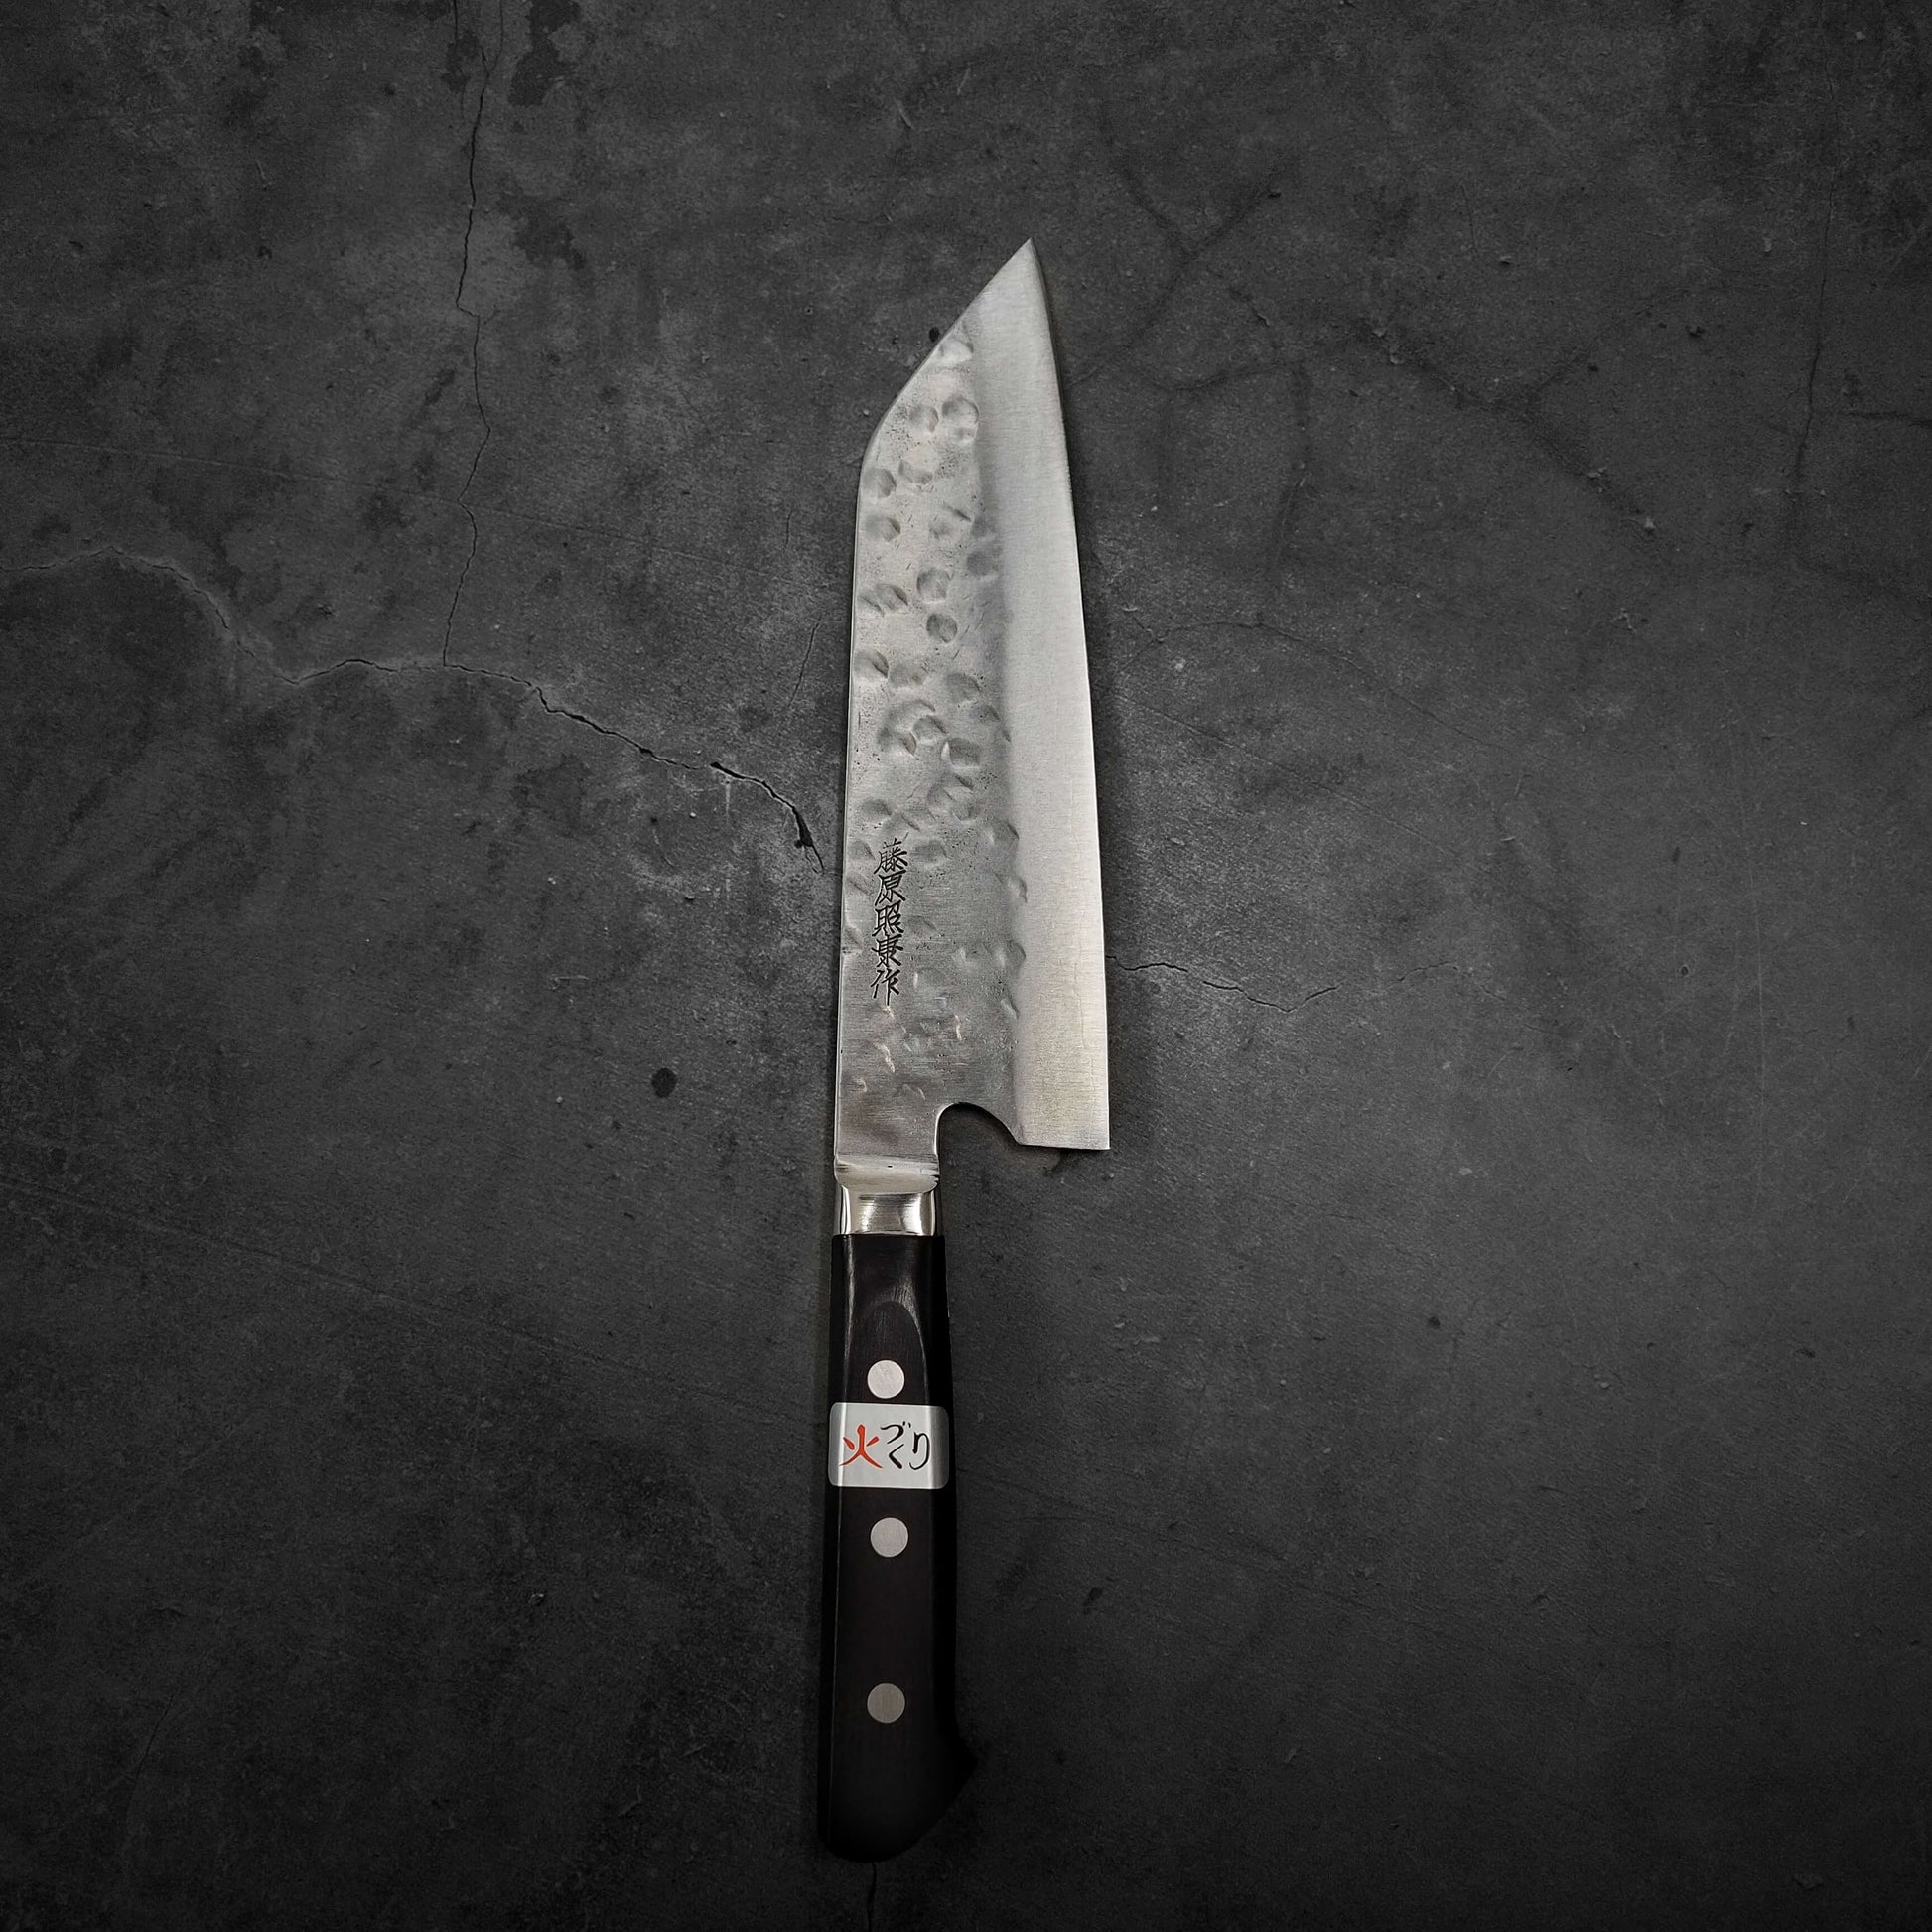 Teruyasu Fujiwara Maboroshi shirogami#1 santoku 180mm - Zahocho Japanese Knives